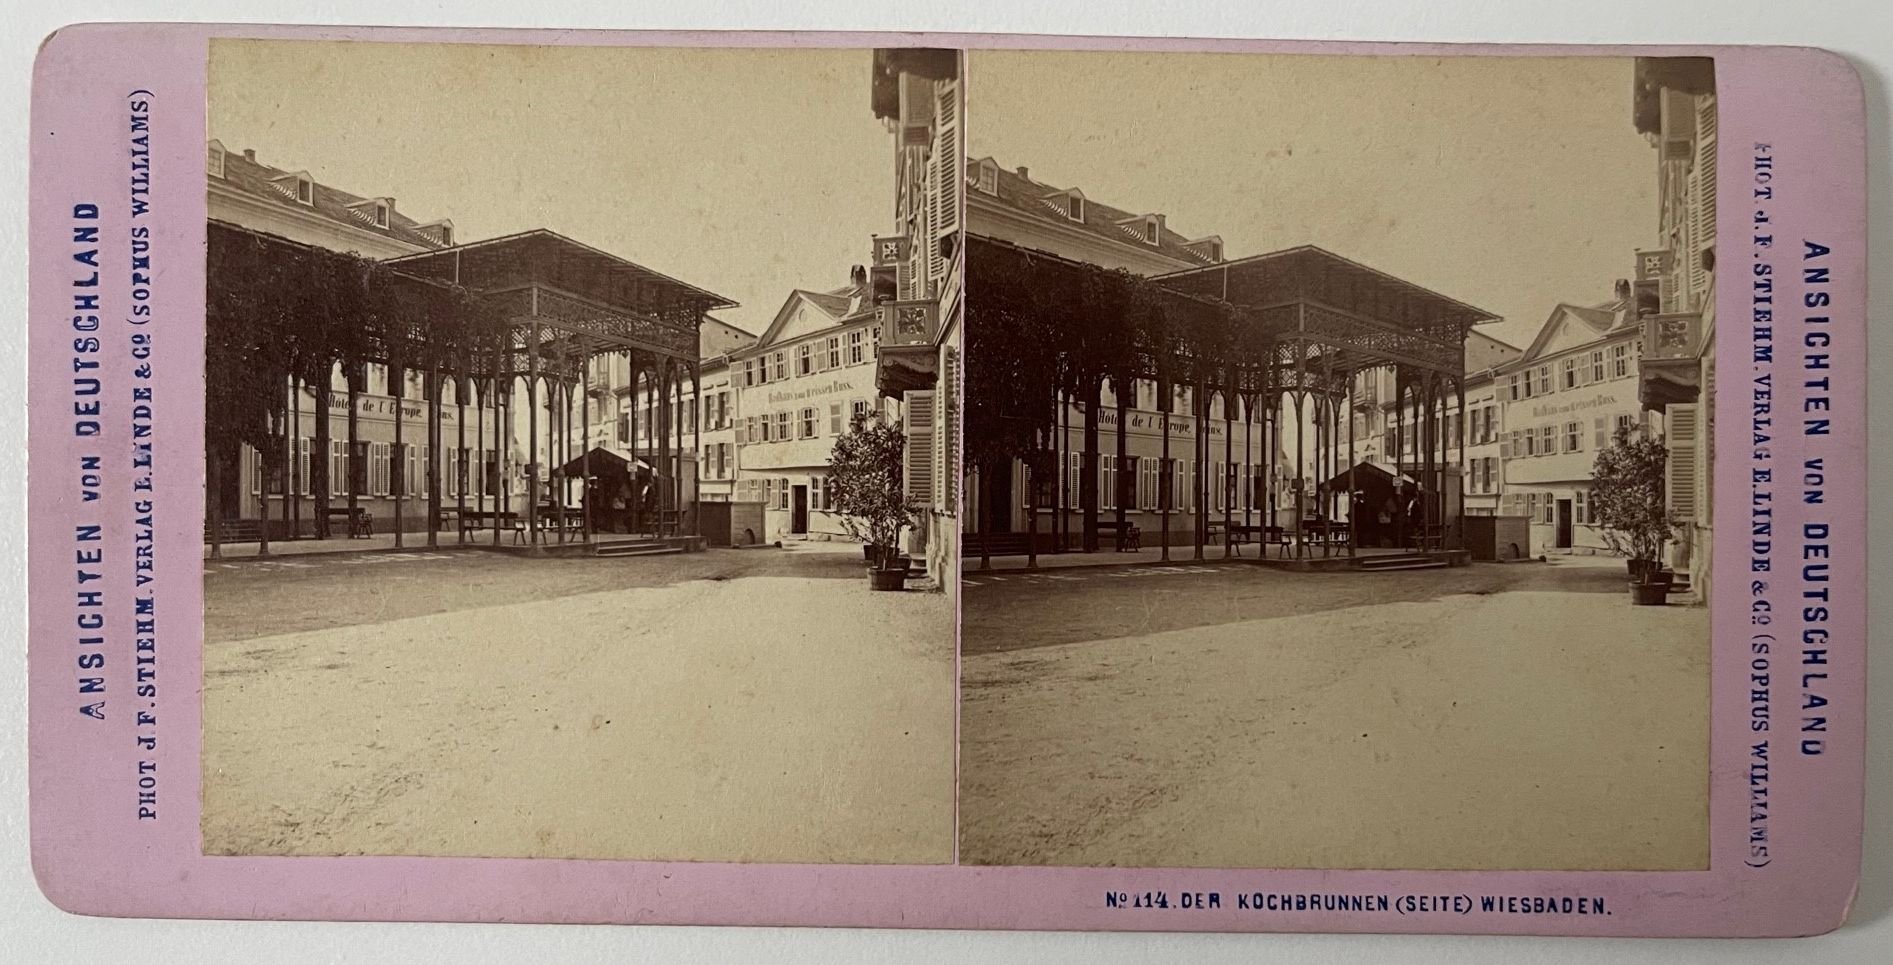 Stereobild, J. F. Stiehm, Wiesbaden, No. 114. Der Kochbrunnen (Seite) Wiesbaden, ca. 1880. (Taunus-Rhein-Main - Regionalgeschichtliche Sammlung Dr. Stefan Naas CC BY-NC-SA)